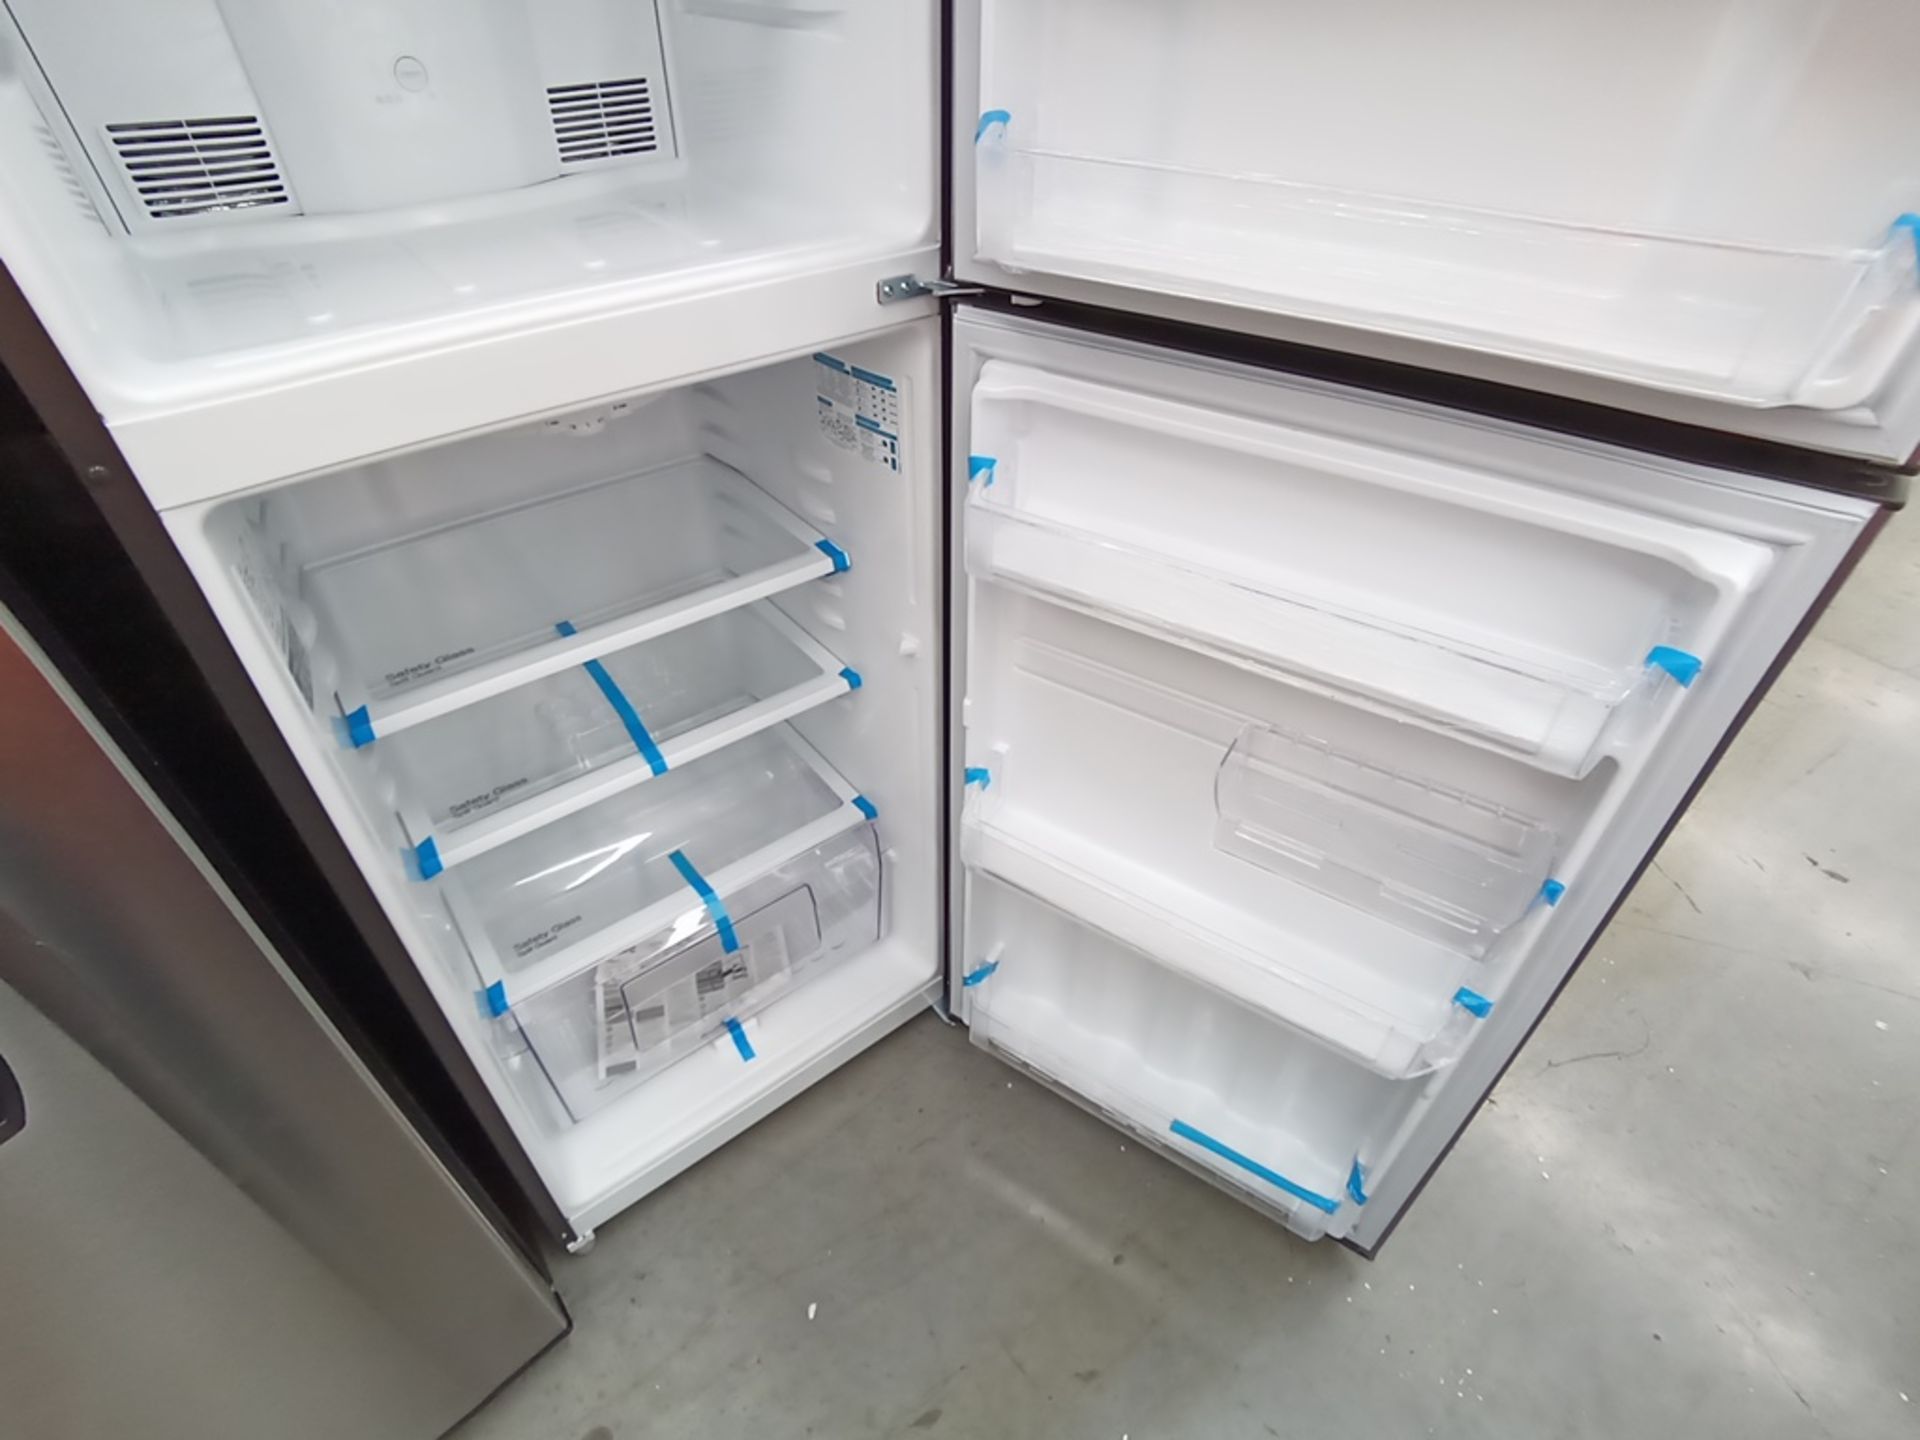 Lote de 2 refrigeradores contiene: 1 Refrigerador con dispensador de agua, Marca Winia, Modelo DFR- - Image 14 of 15